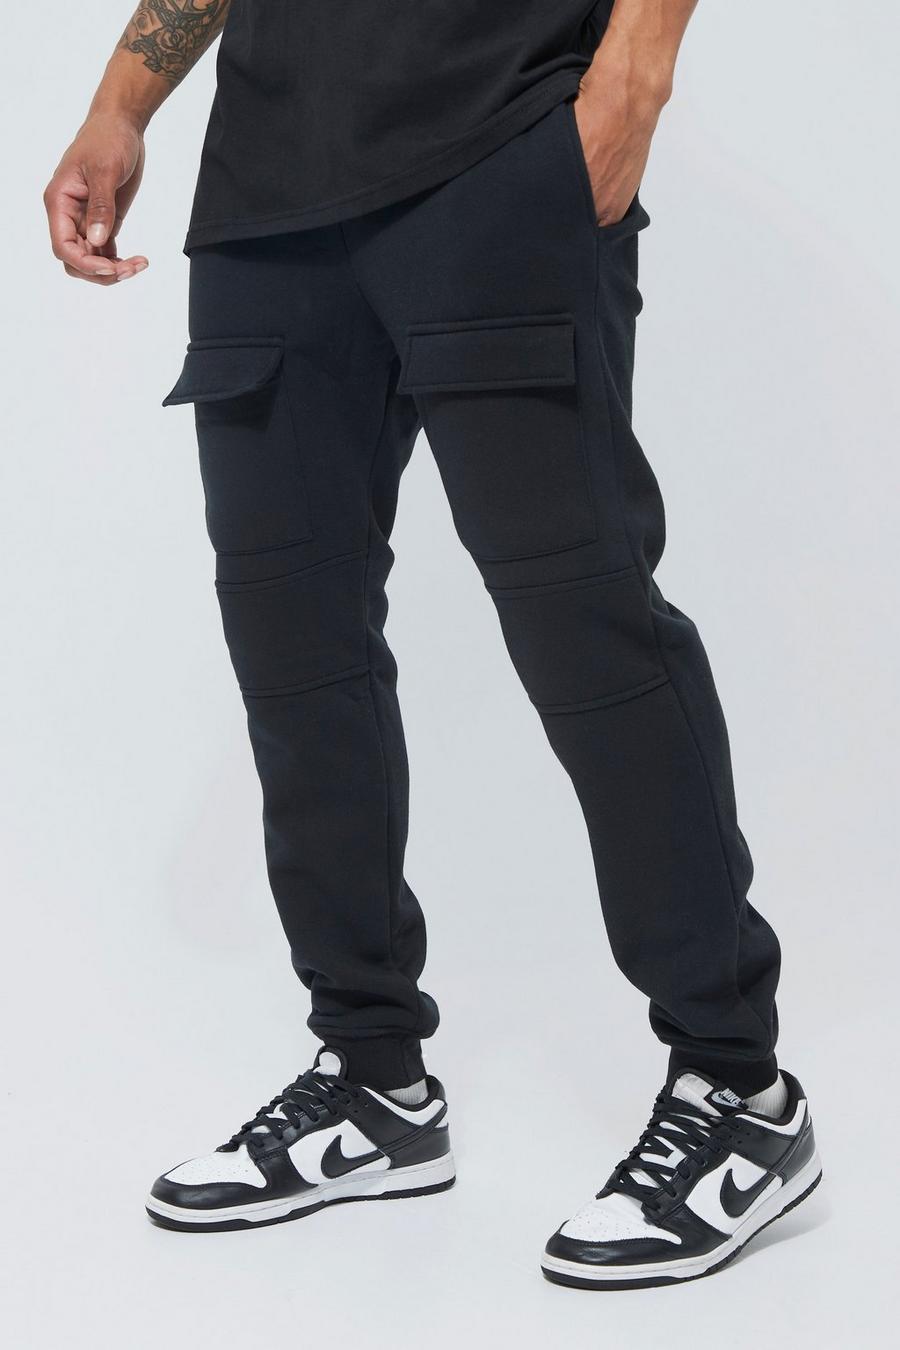 Pantaloni tuta Cargo Slim Fit con pannelli e tasche frontali, Black negro